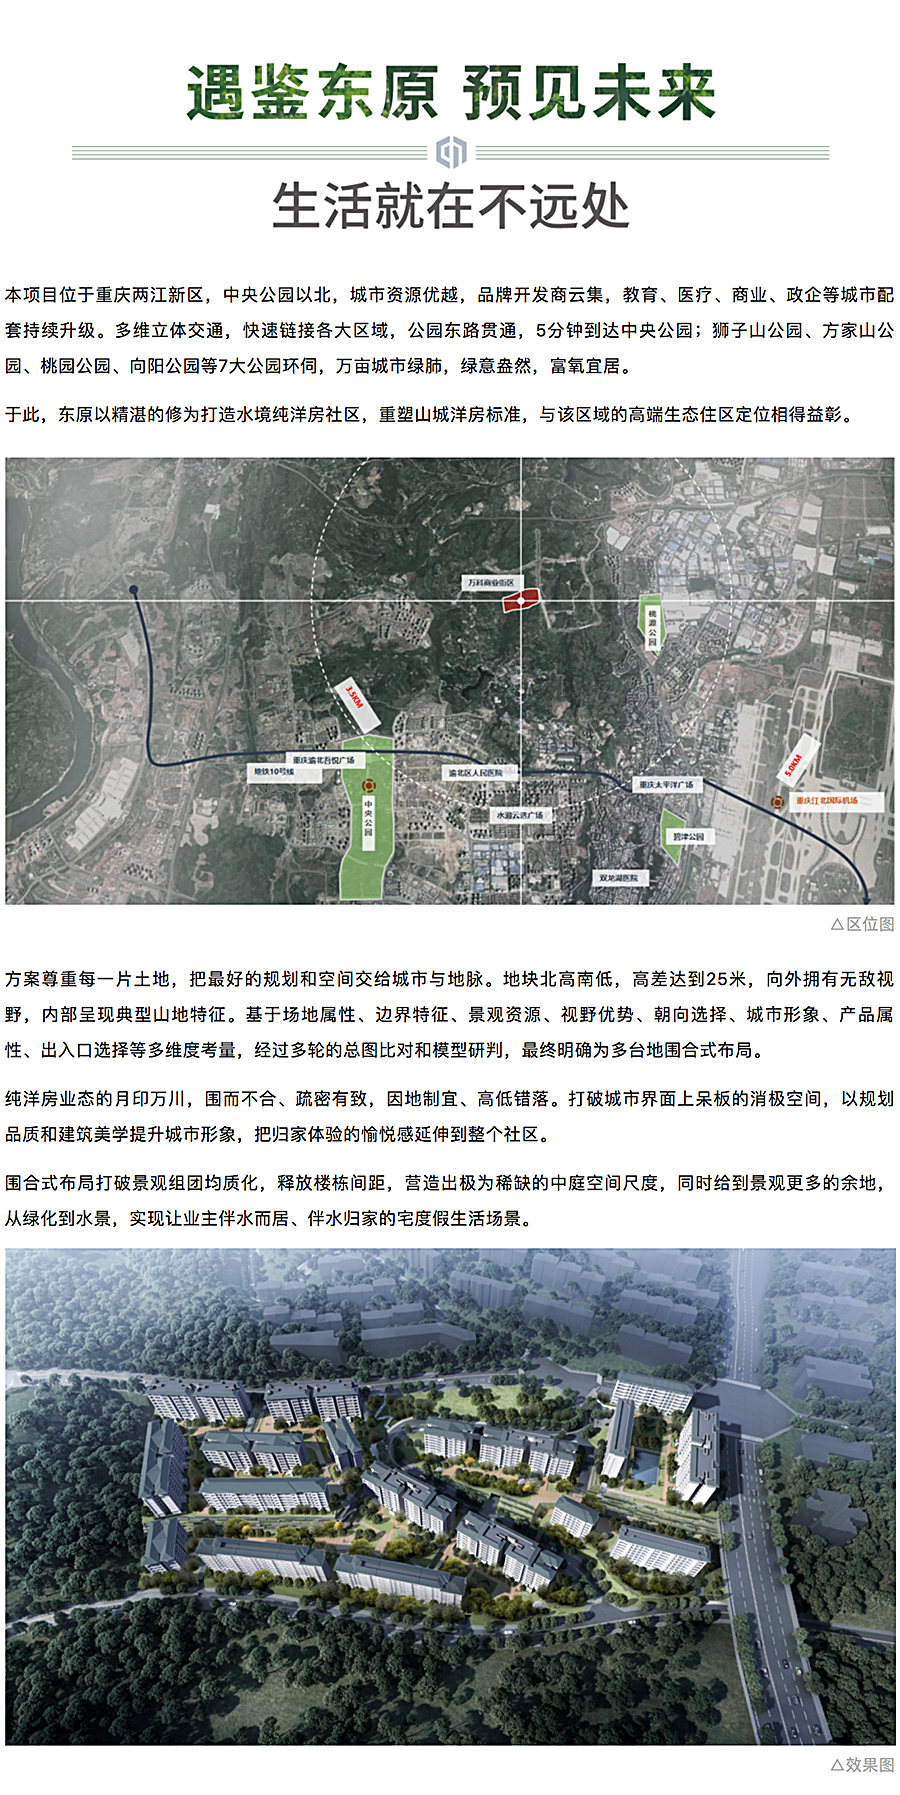 创新洋房社区-引领当代生活-_-重庆东原·月印万川_0001_图层-2.jpg